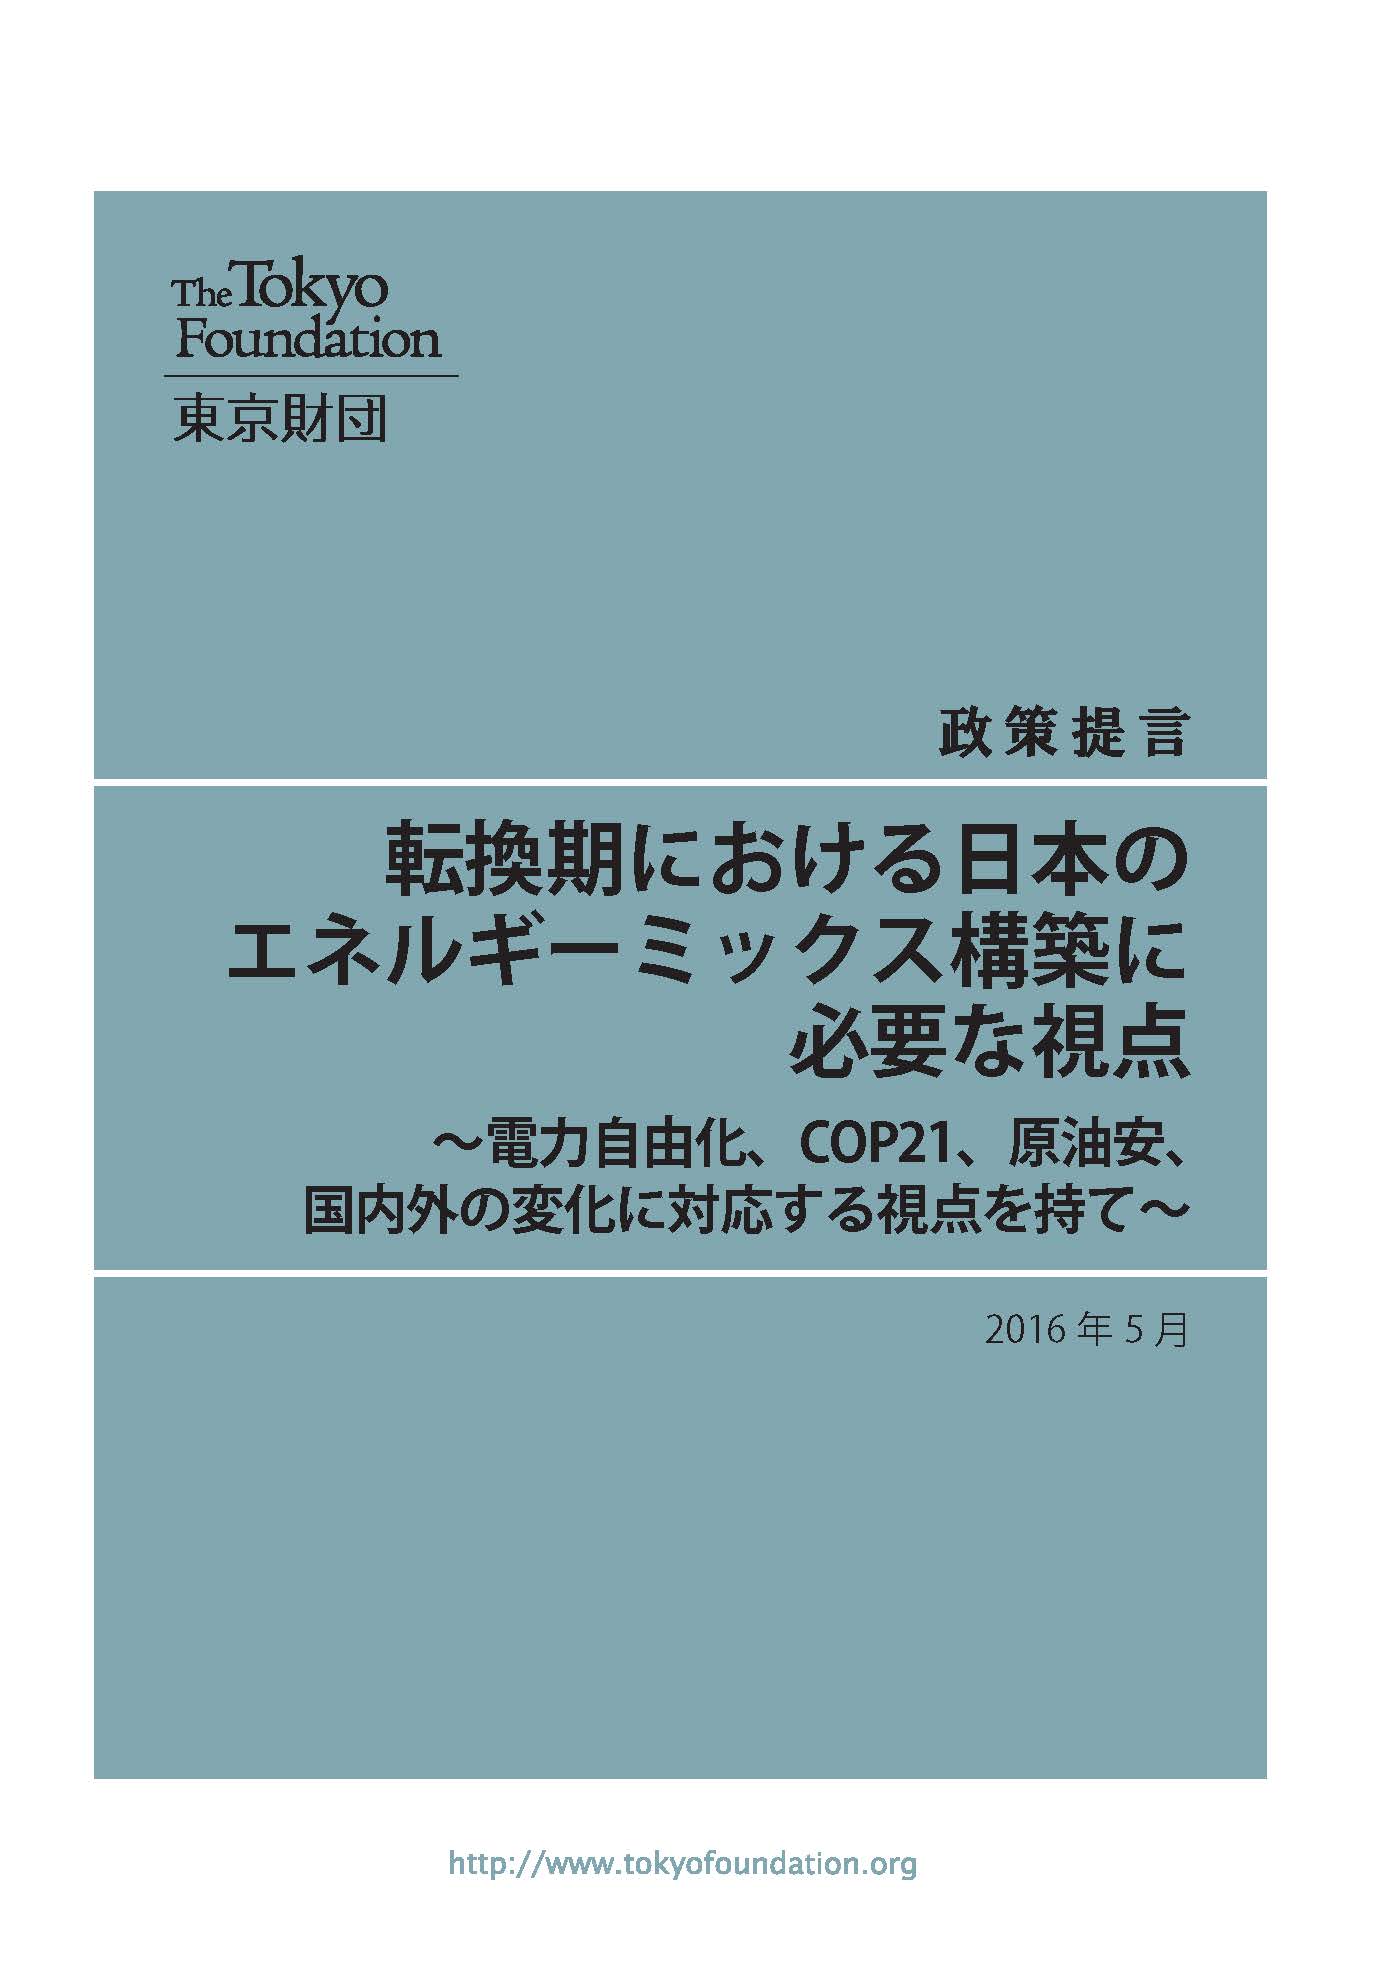 転換期における日本のエネルギーミックス構築に必要な視点――電力自由化、COP21、原油安、 国内外の変化に対応する視点を持て